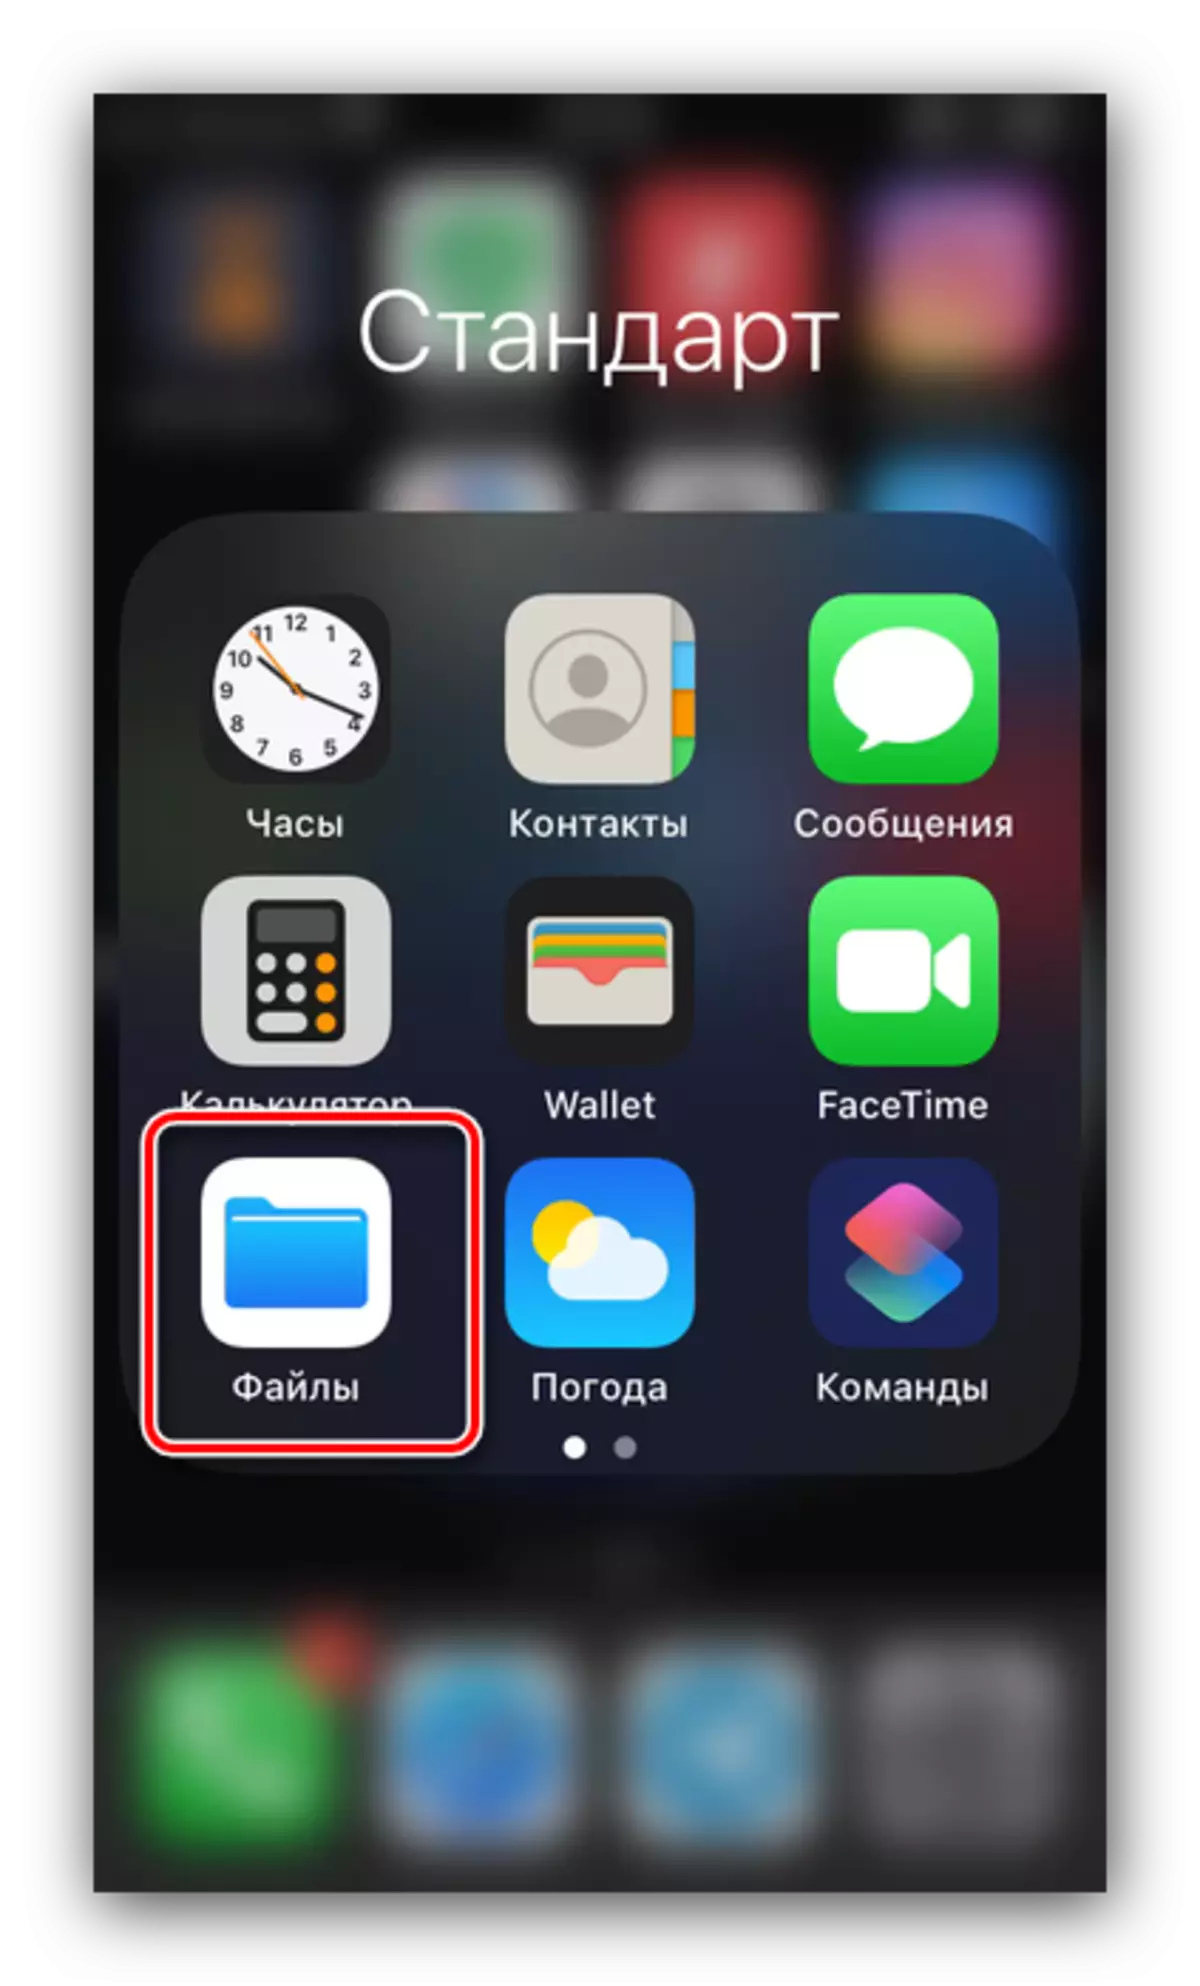 Abra o gerenciador para mover fotos de uma unidade flash no telefone iOS através do OTG